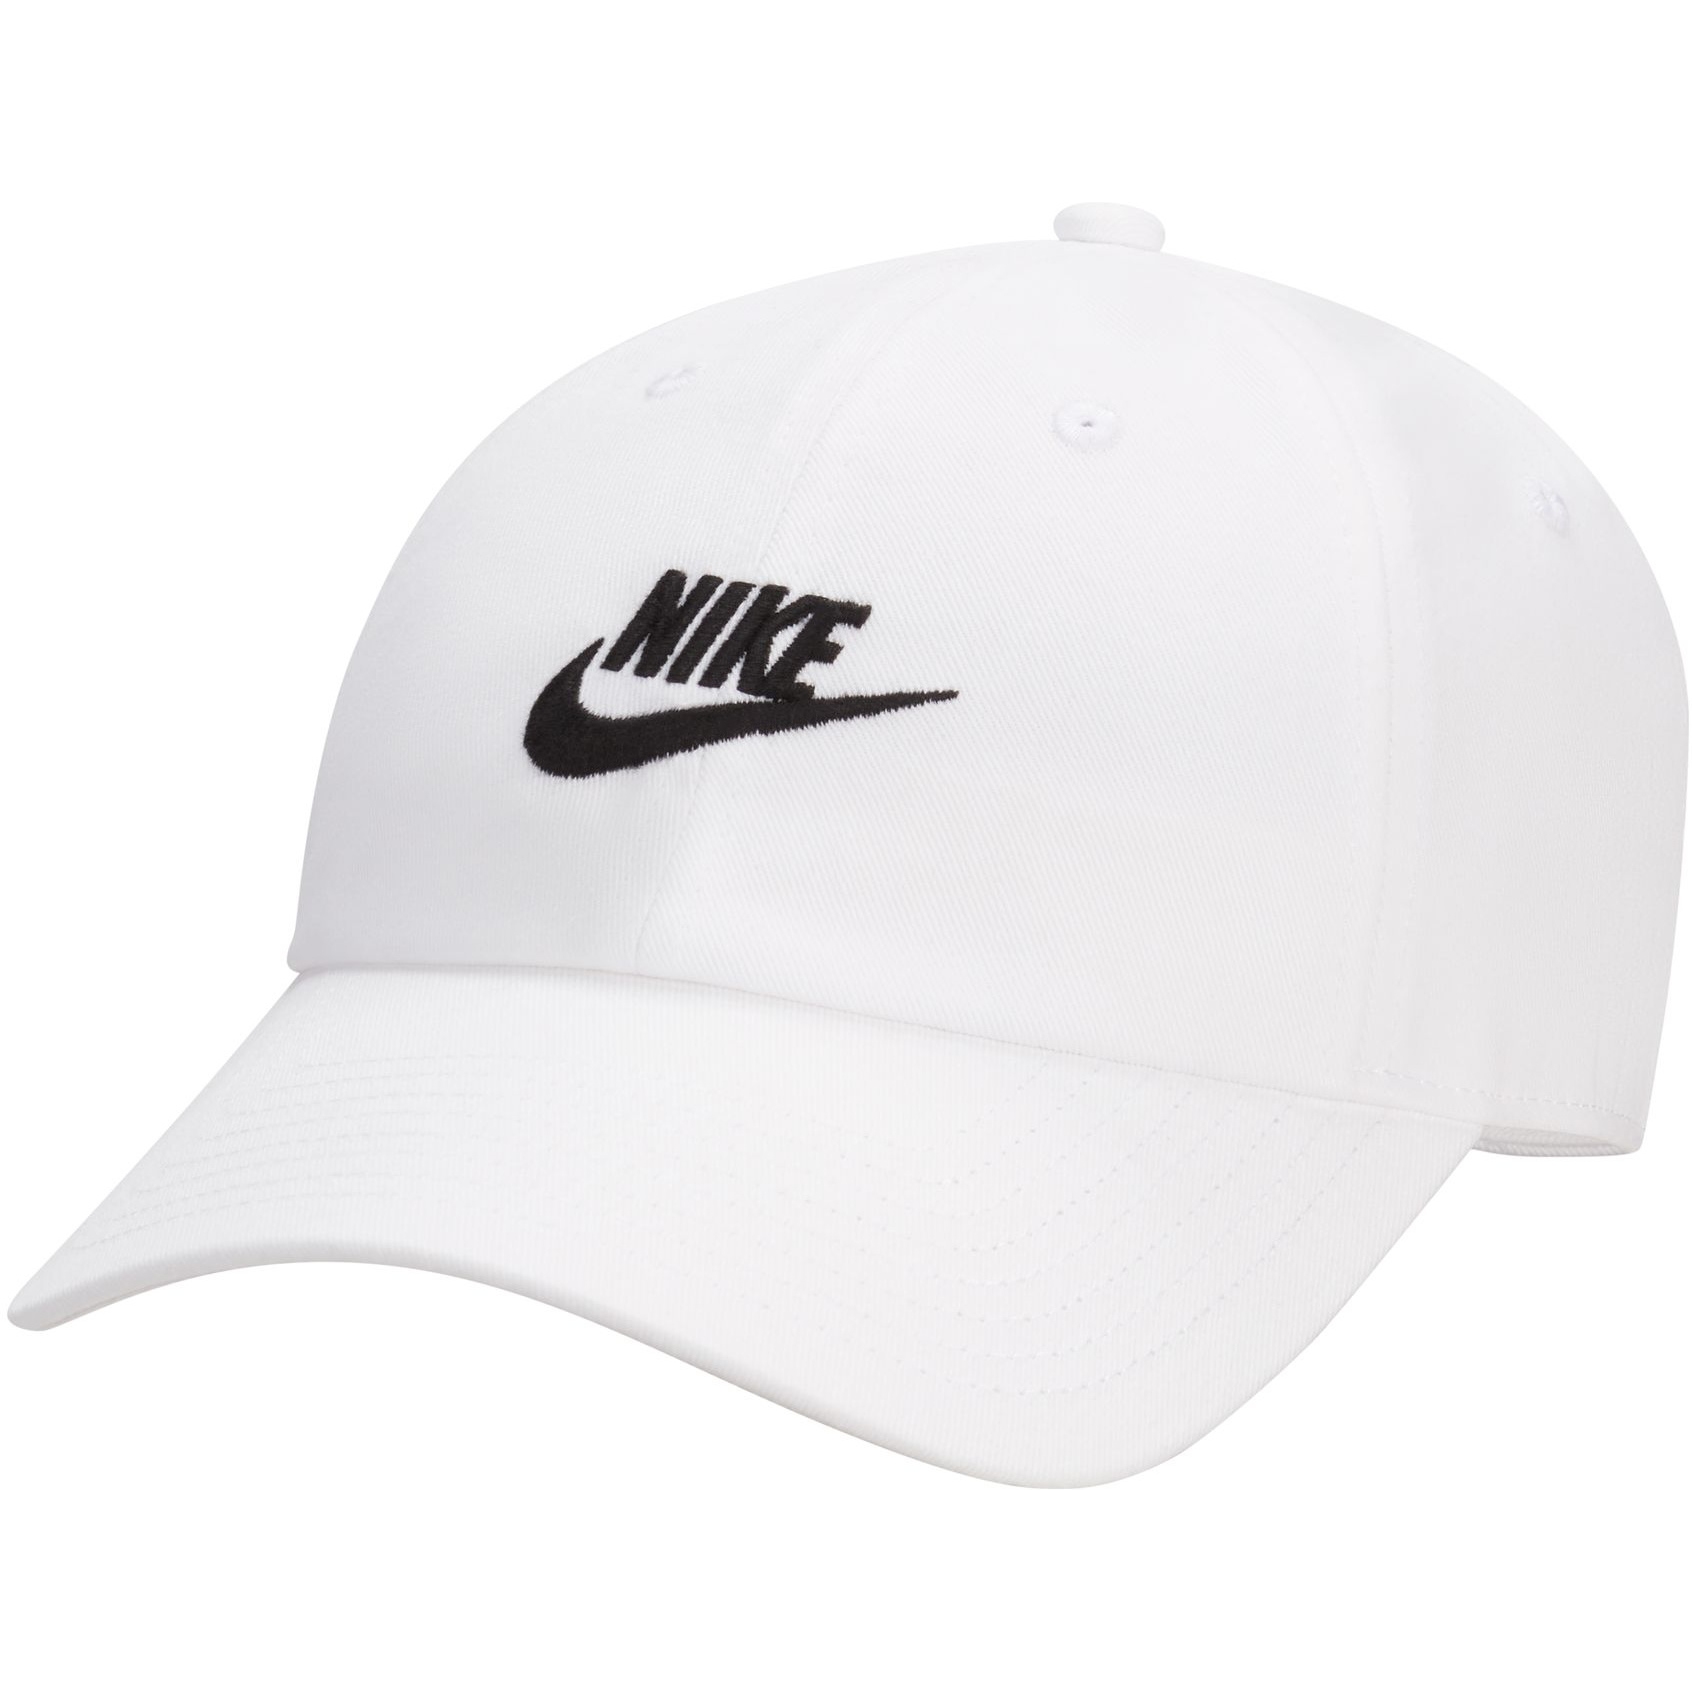 Produktbild von Nike Club Futura Wash Cap - weiß/schwarz FB5368-100